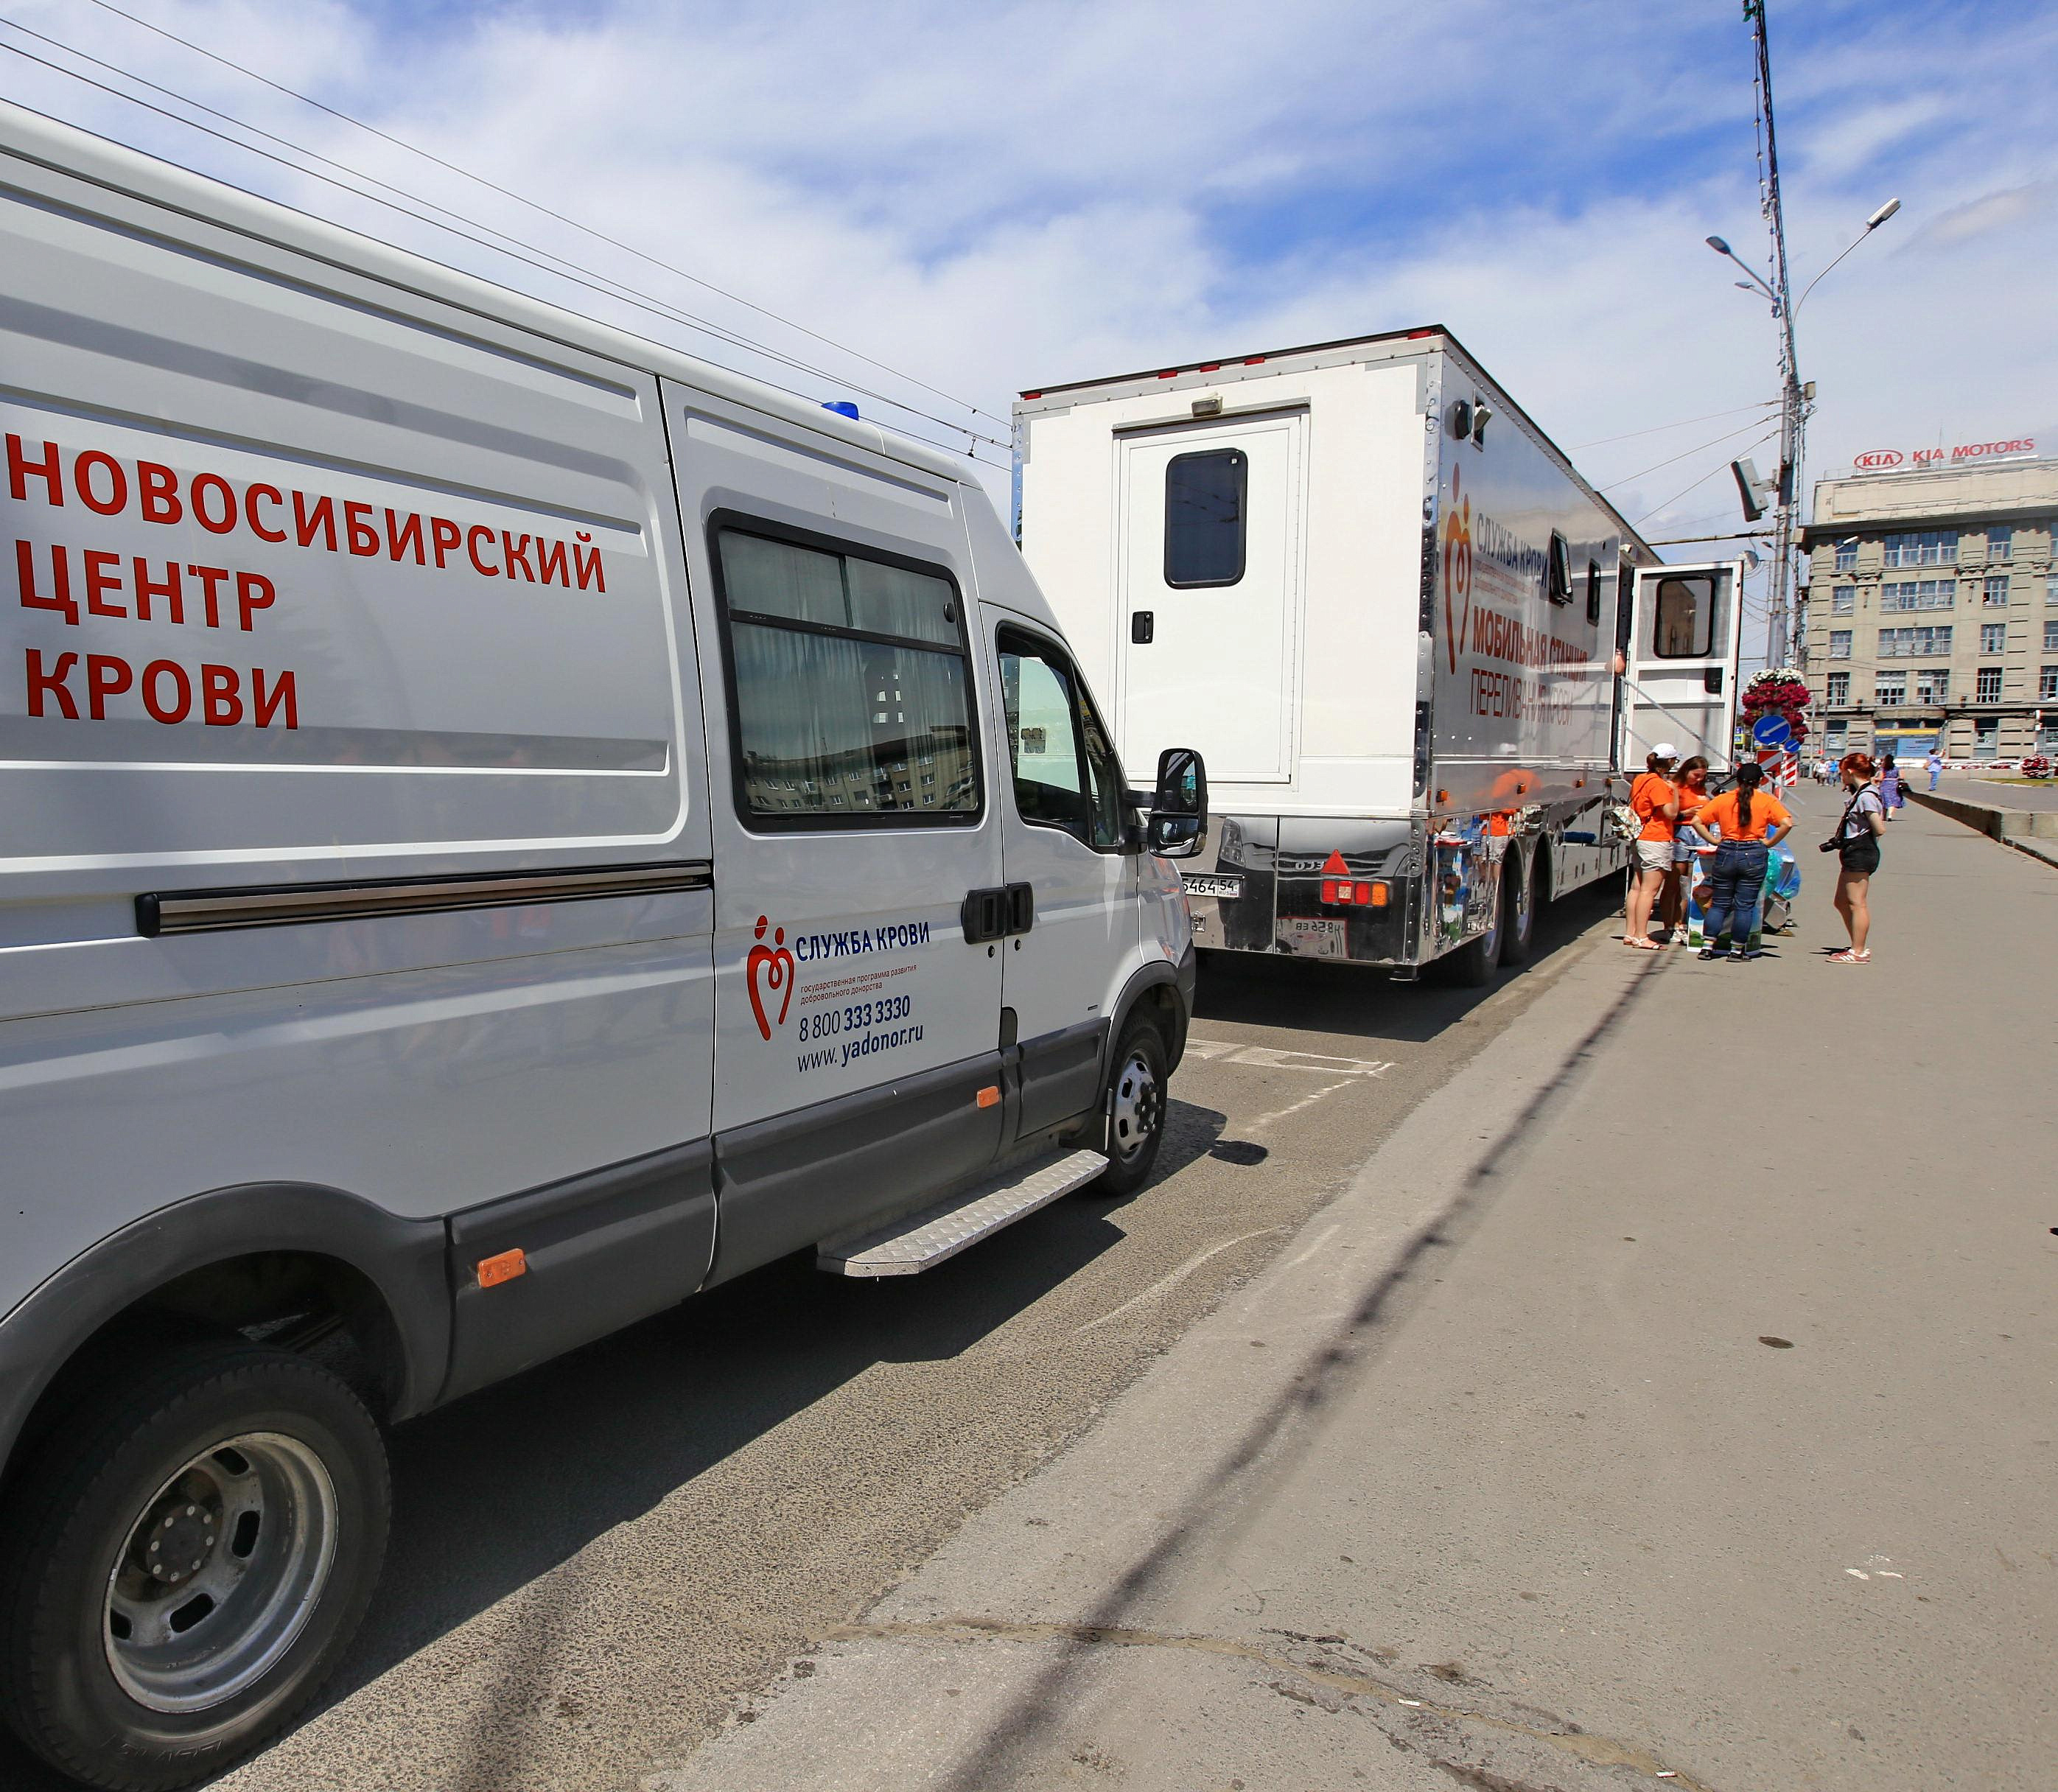 Школу доноров откроют 18 мая у памятника Ленину в Новосибирске